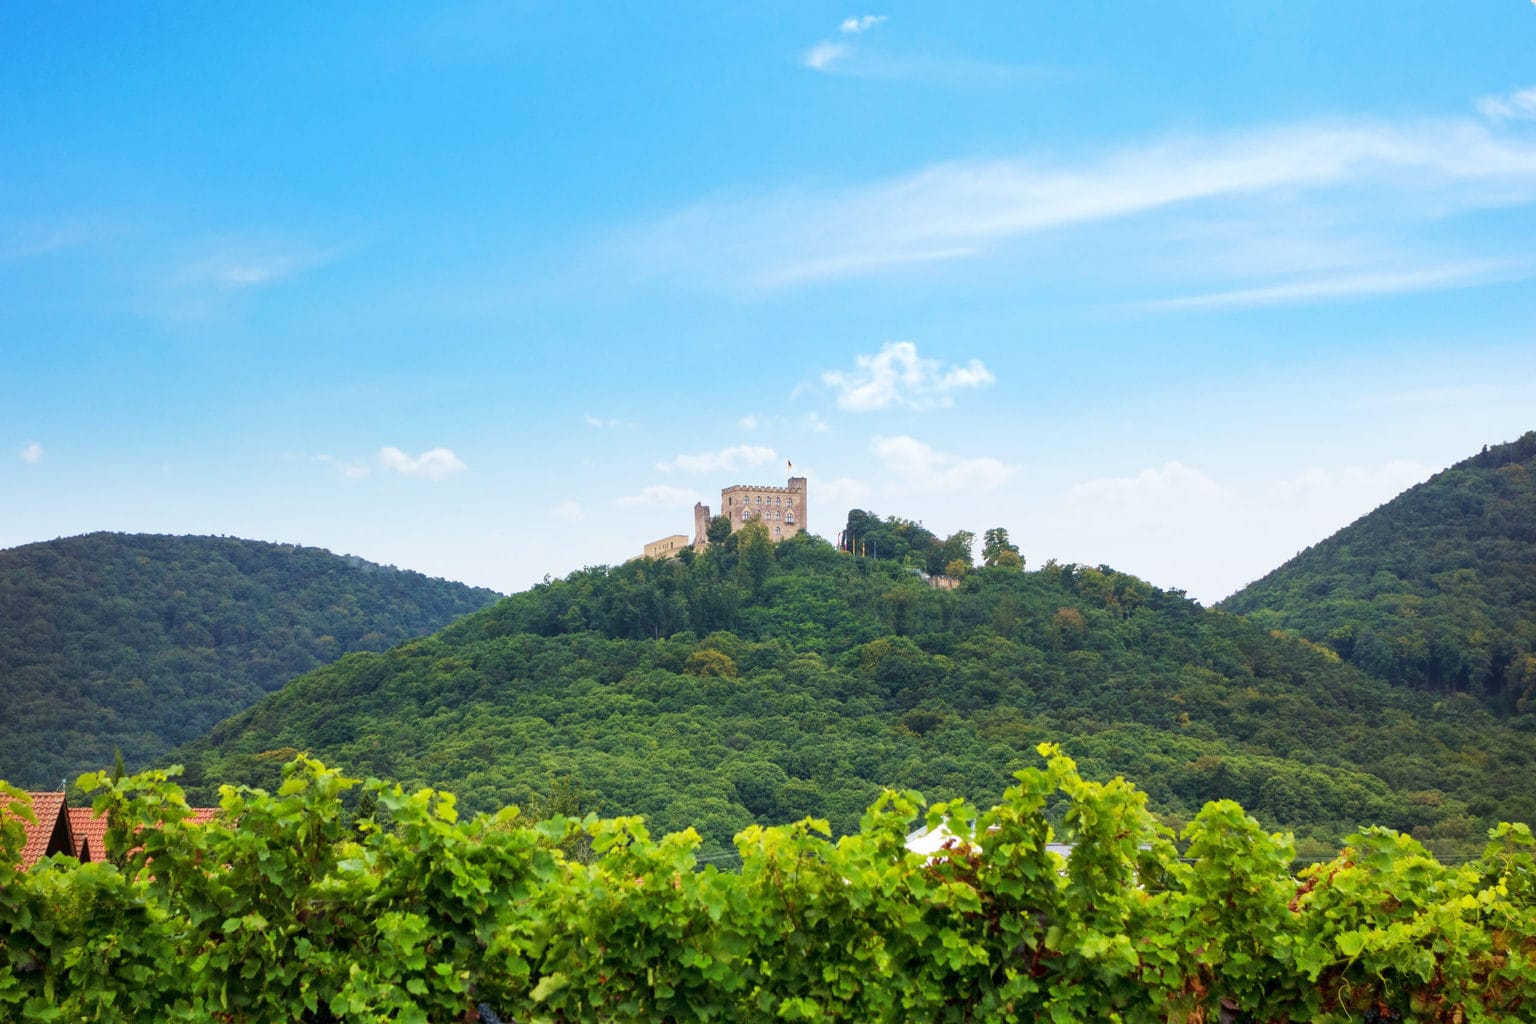 Het Hambacher Schloss ligt inmidden van wijngaarden